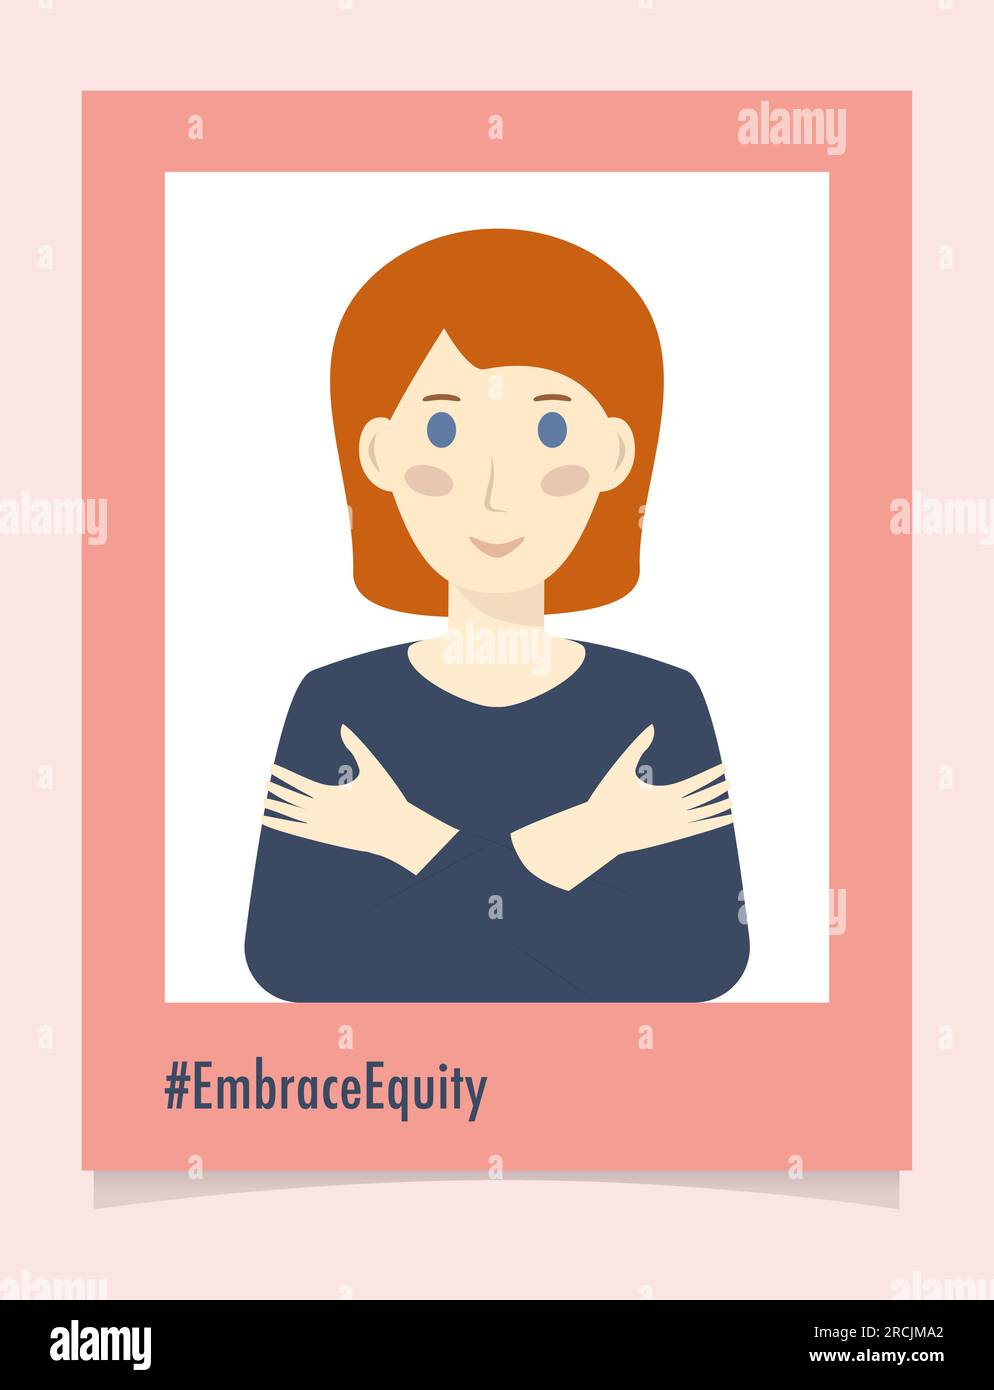 Portrait de personne #EmbraceEquity Donnez à l'équité une énorme adhésion. Journée internationale de la femme 2023 embrasser l'équité. L'égalité des chances ne suffit plus Illustration de Vecteur